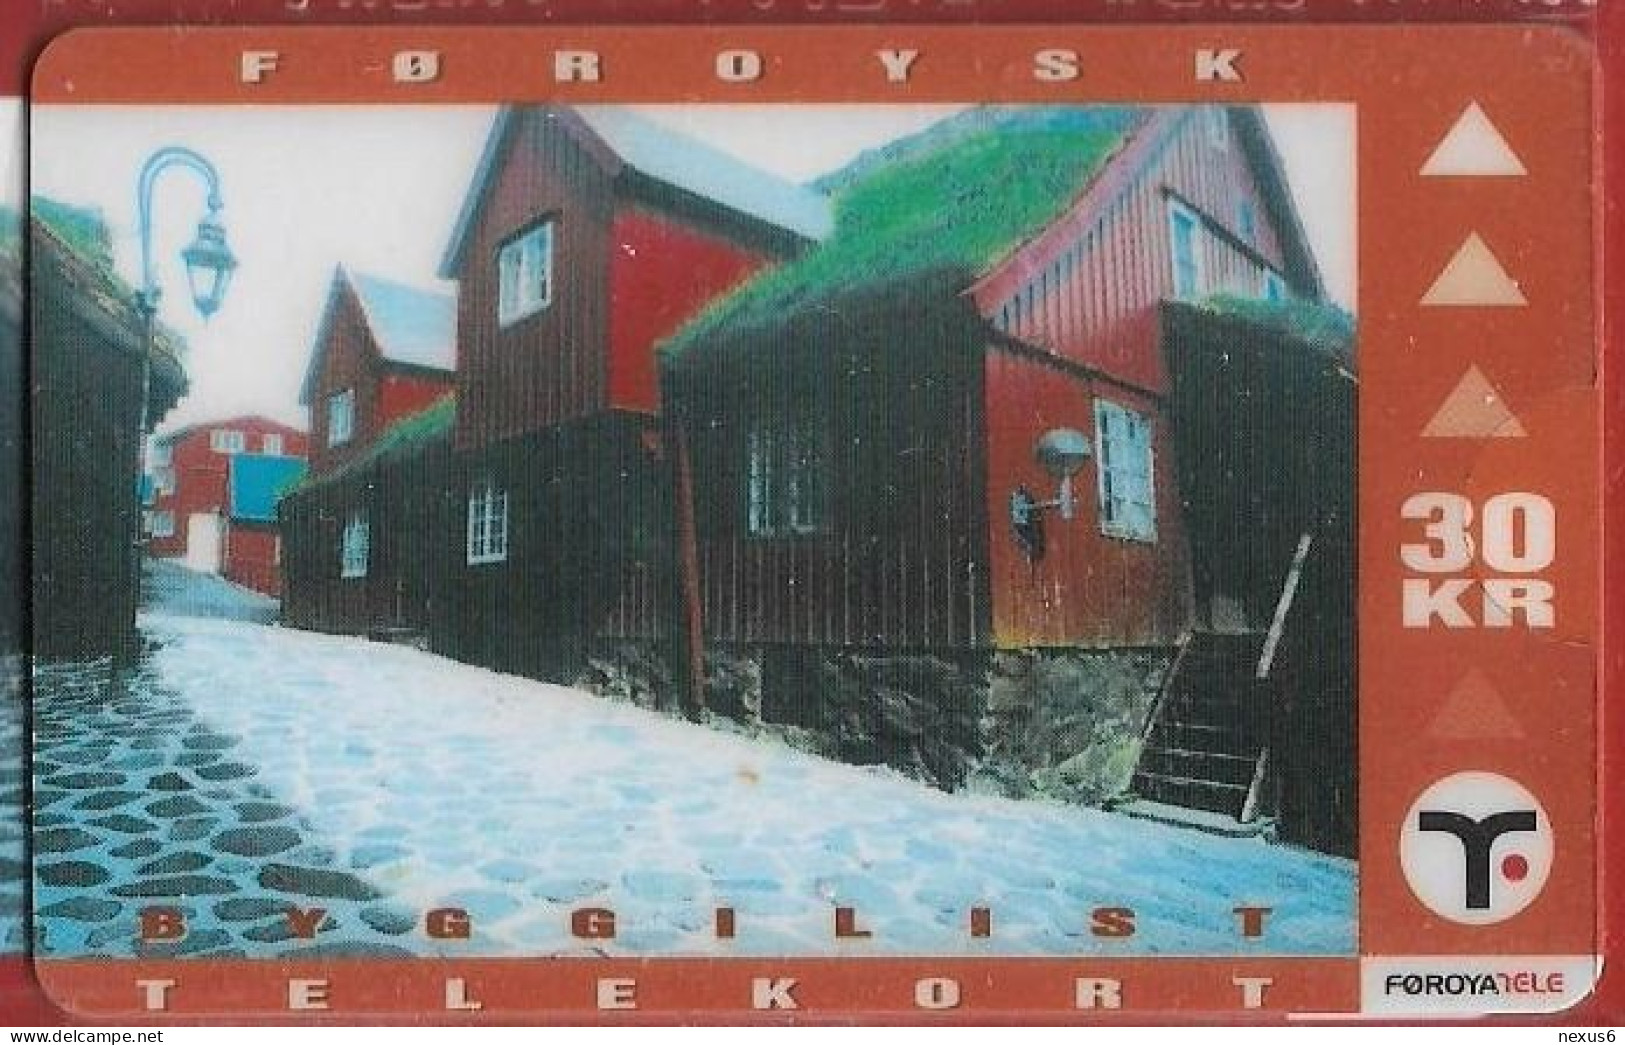 Faroe - Færøsk Byggekunst Pair Of 2 Cards, 1.000ex, Mint With Folder - Faroe Islands